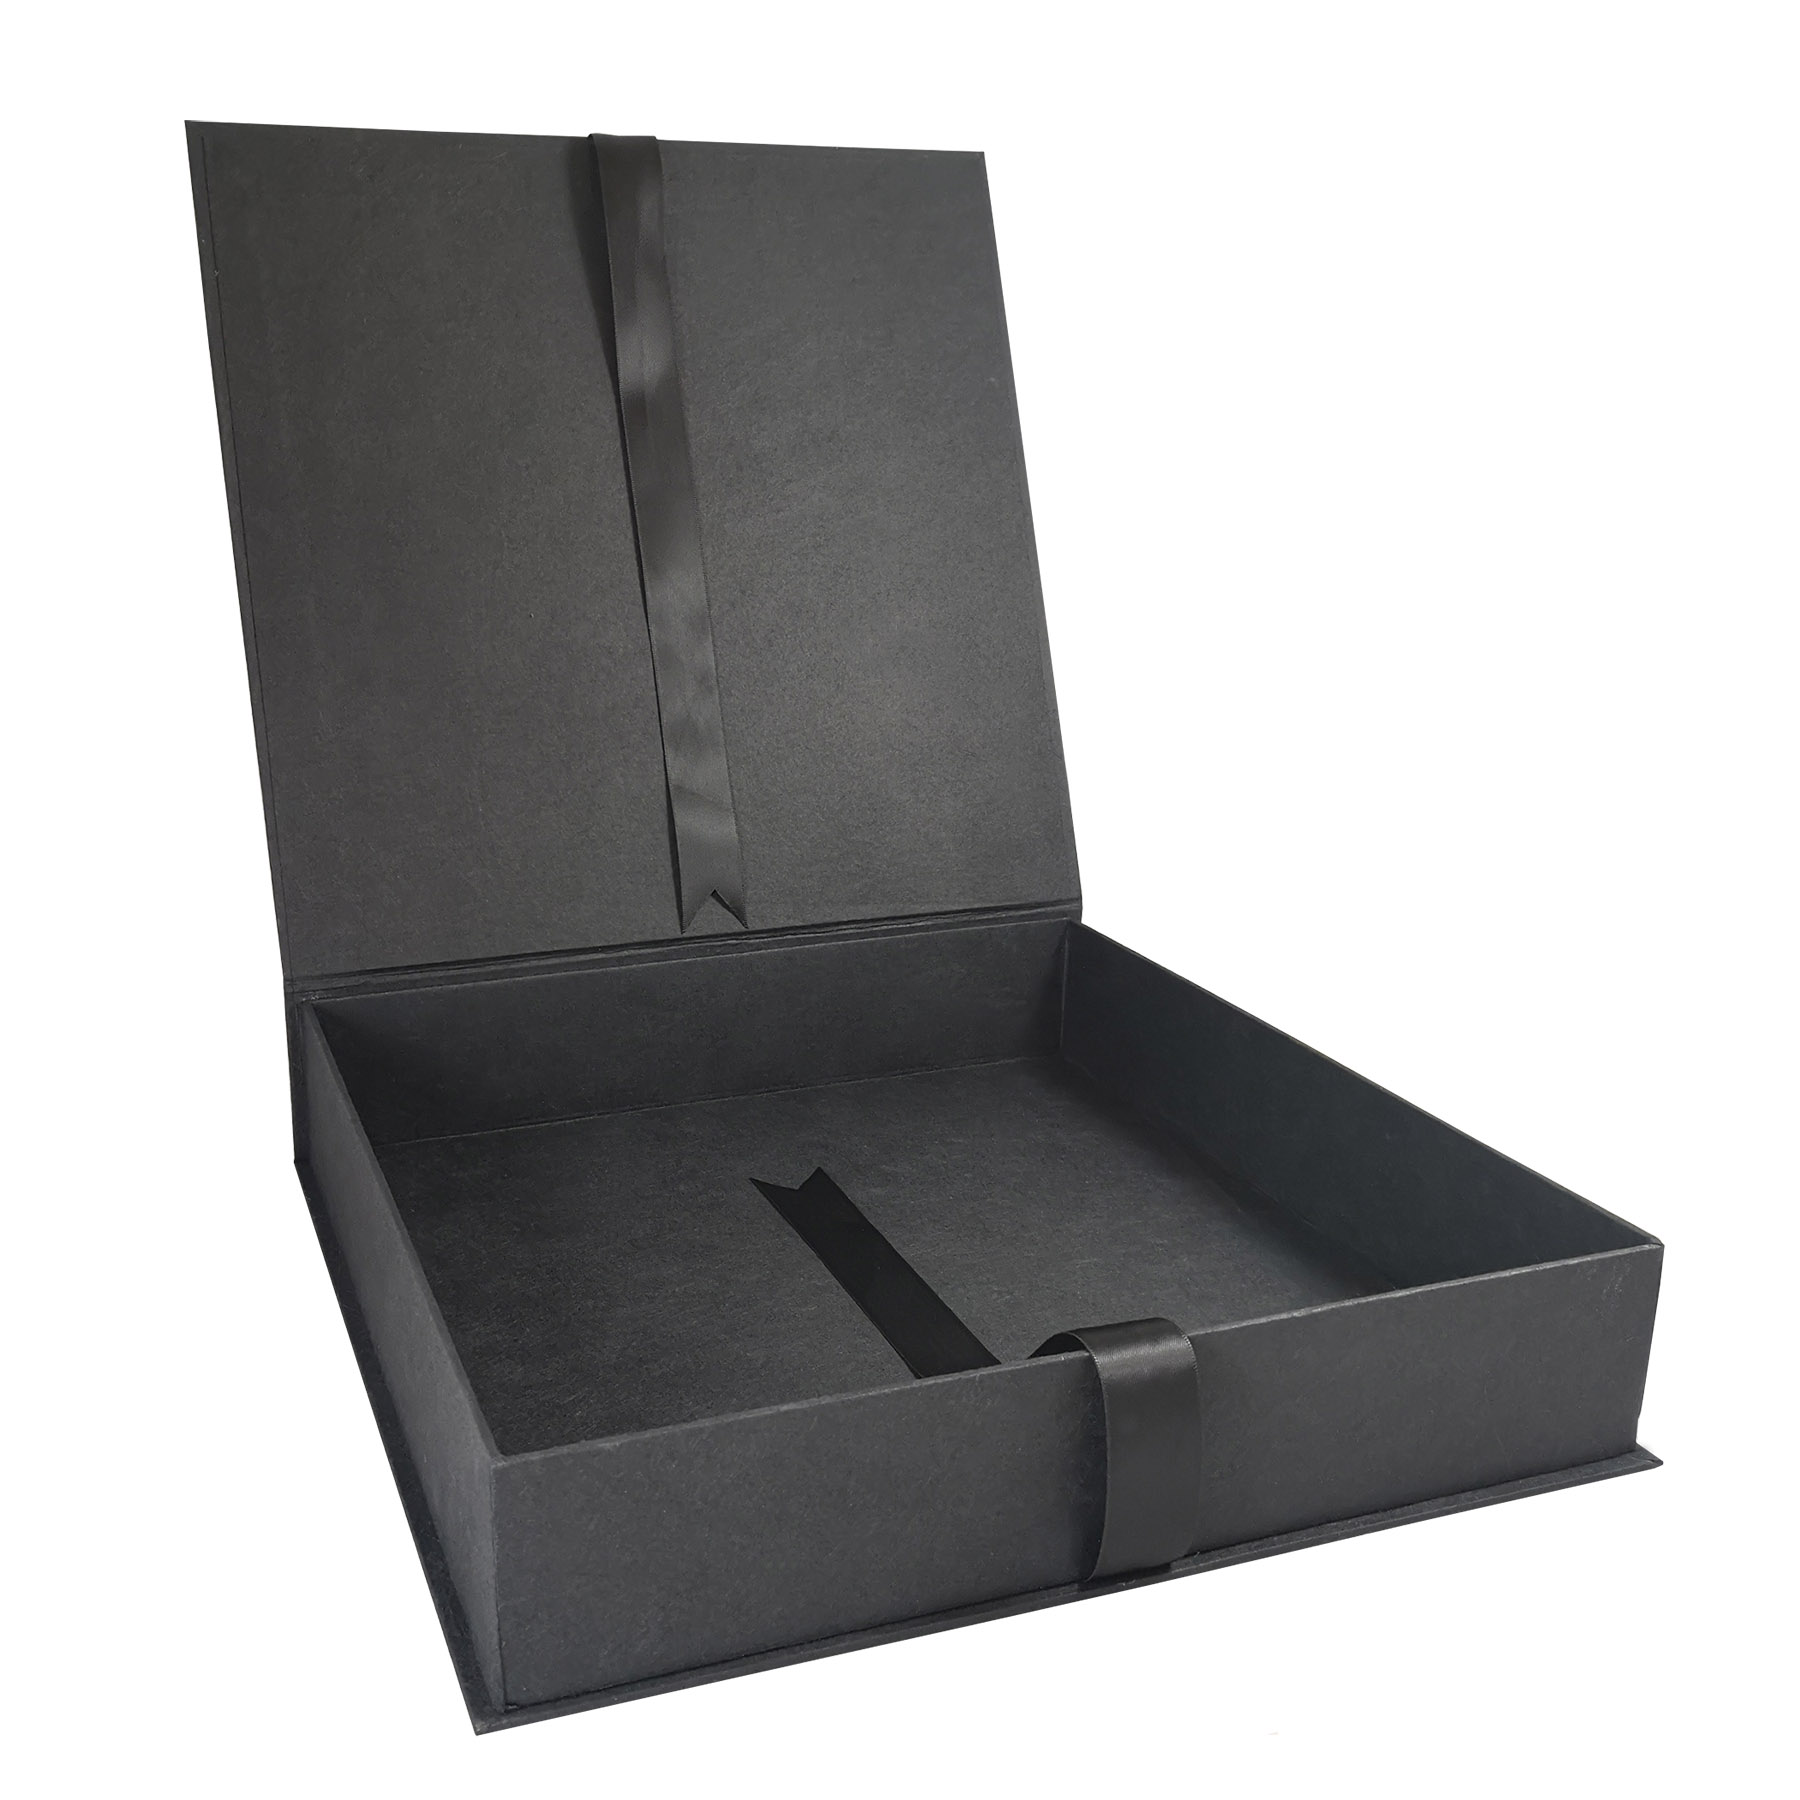 friendly hinged lid packaging box in black